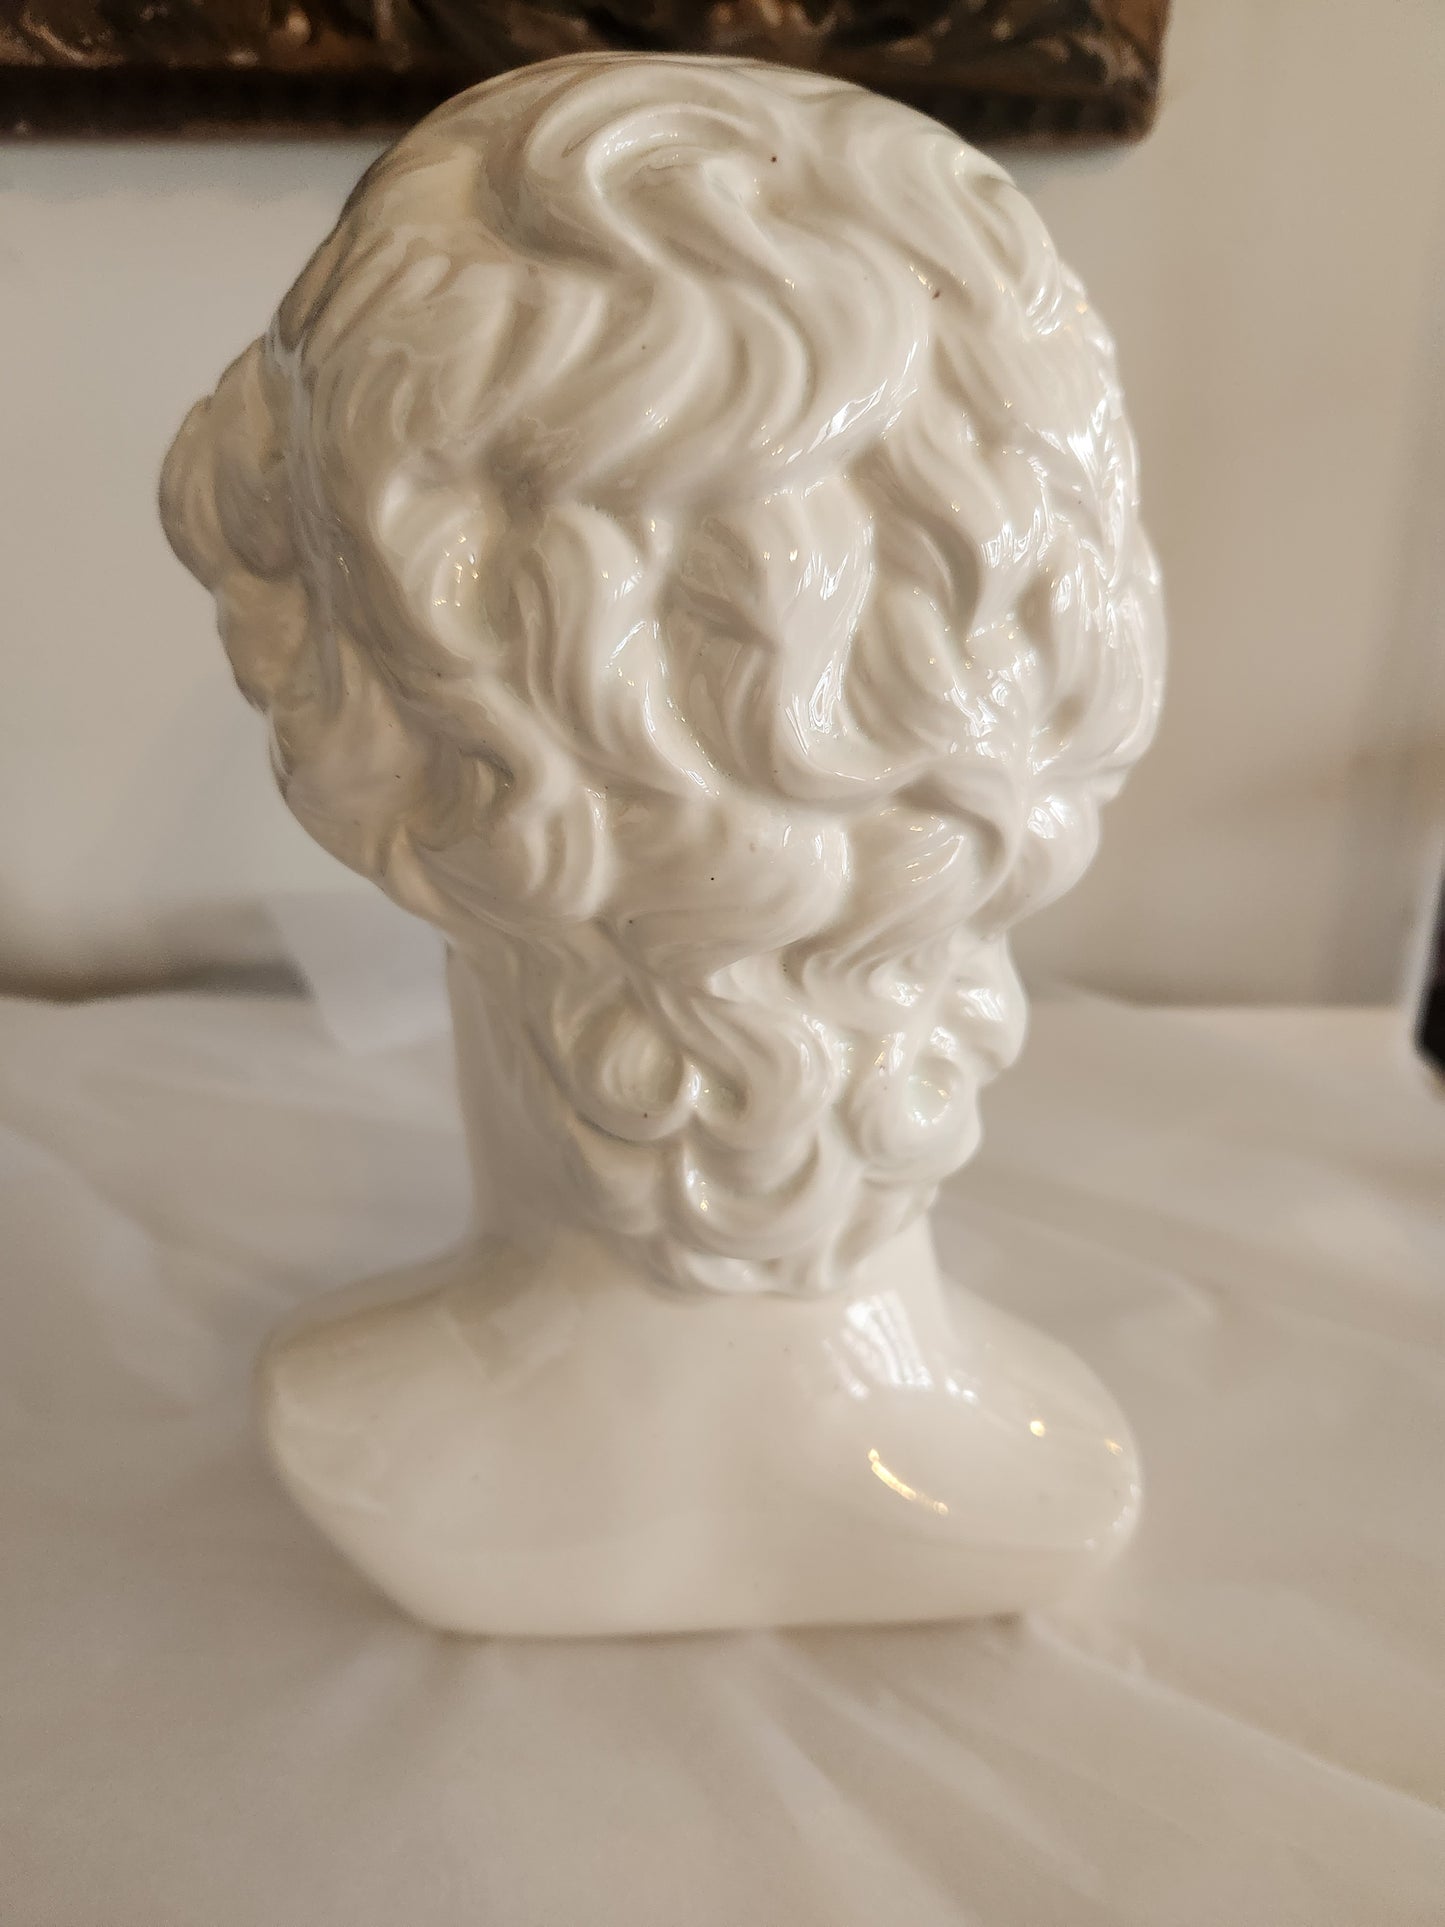 Michelangelo David Ceramic Bust